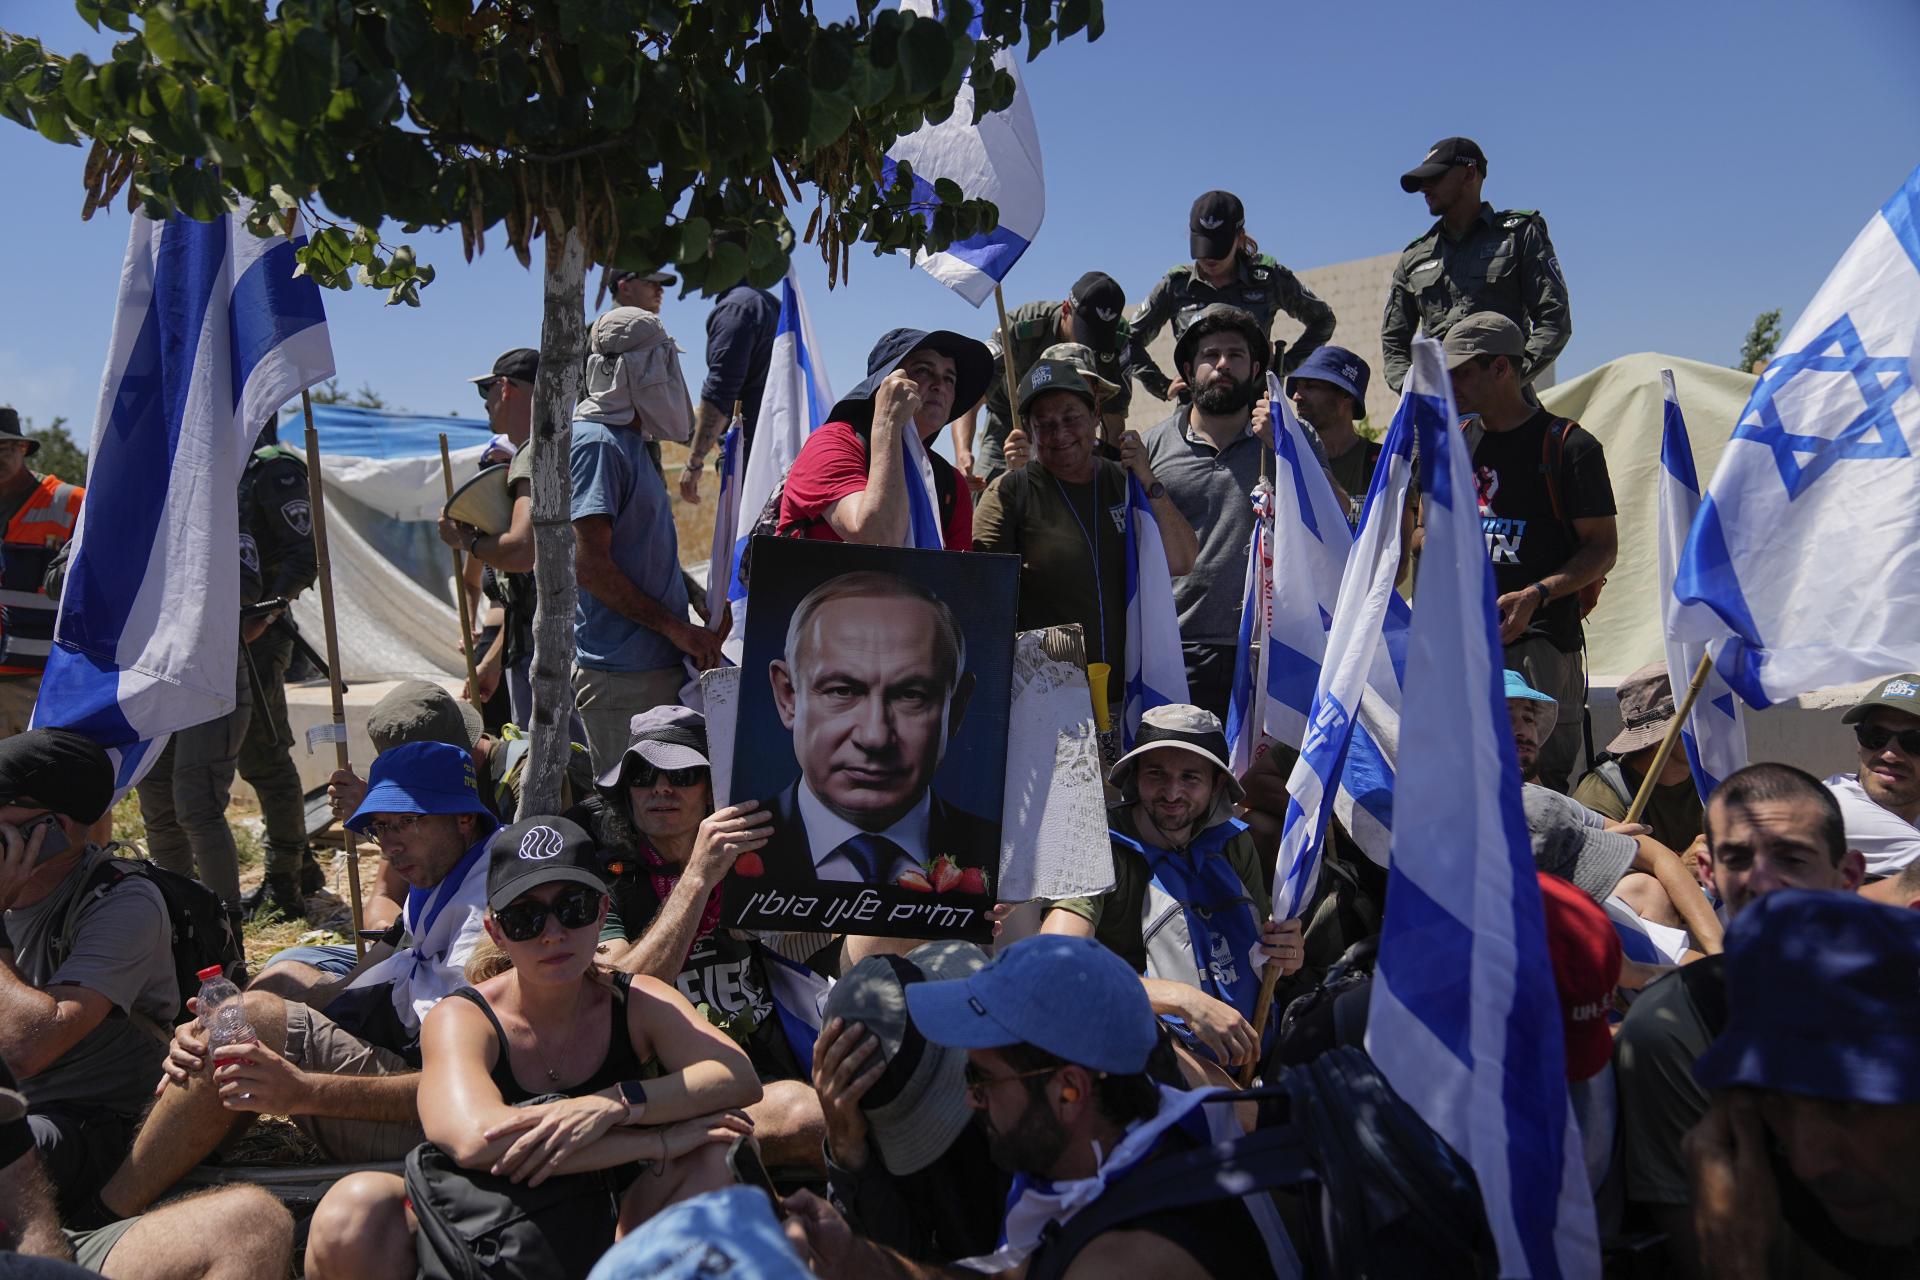 Takmer tretina Izraelčanov po schválení kontroverzného zákona zvažuje odchod z krajiny